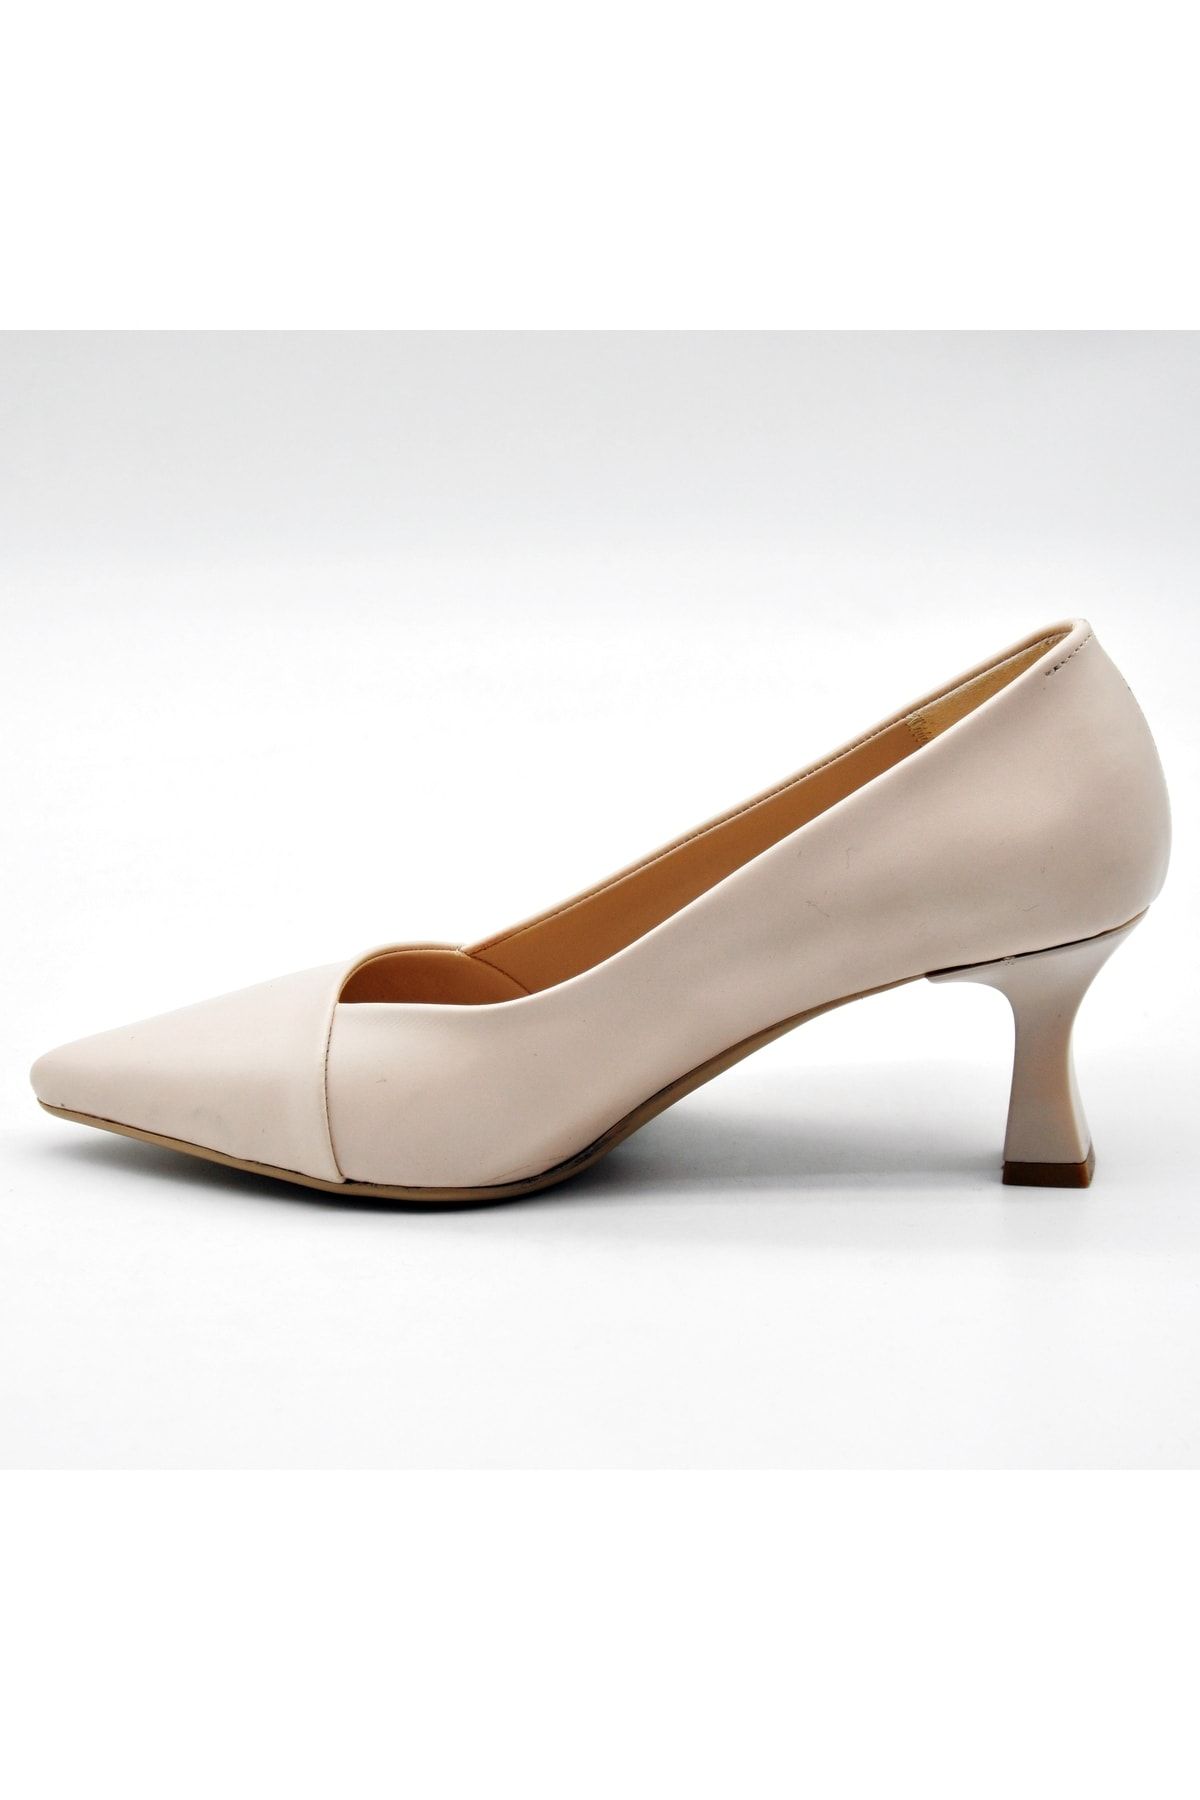 ERDEMLER Wls-108 Kadın Stiletto Ayakkabı